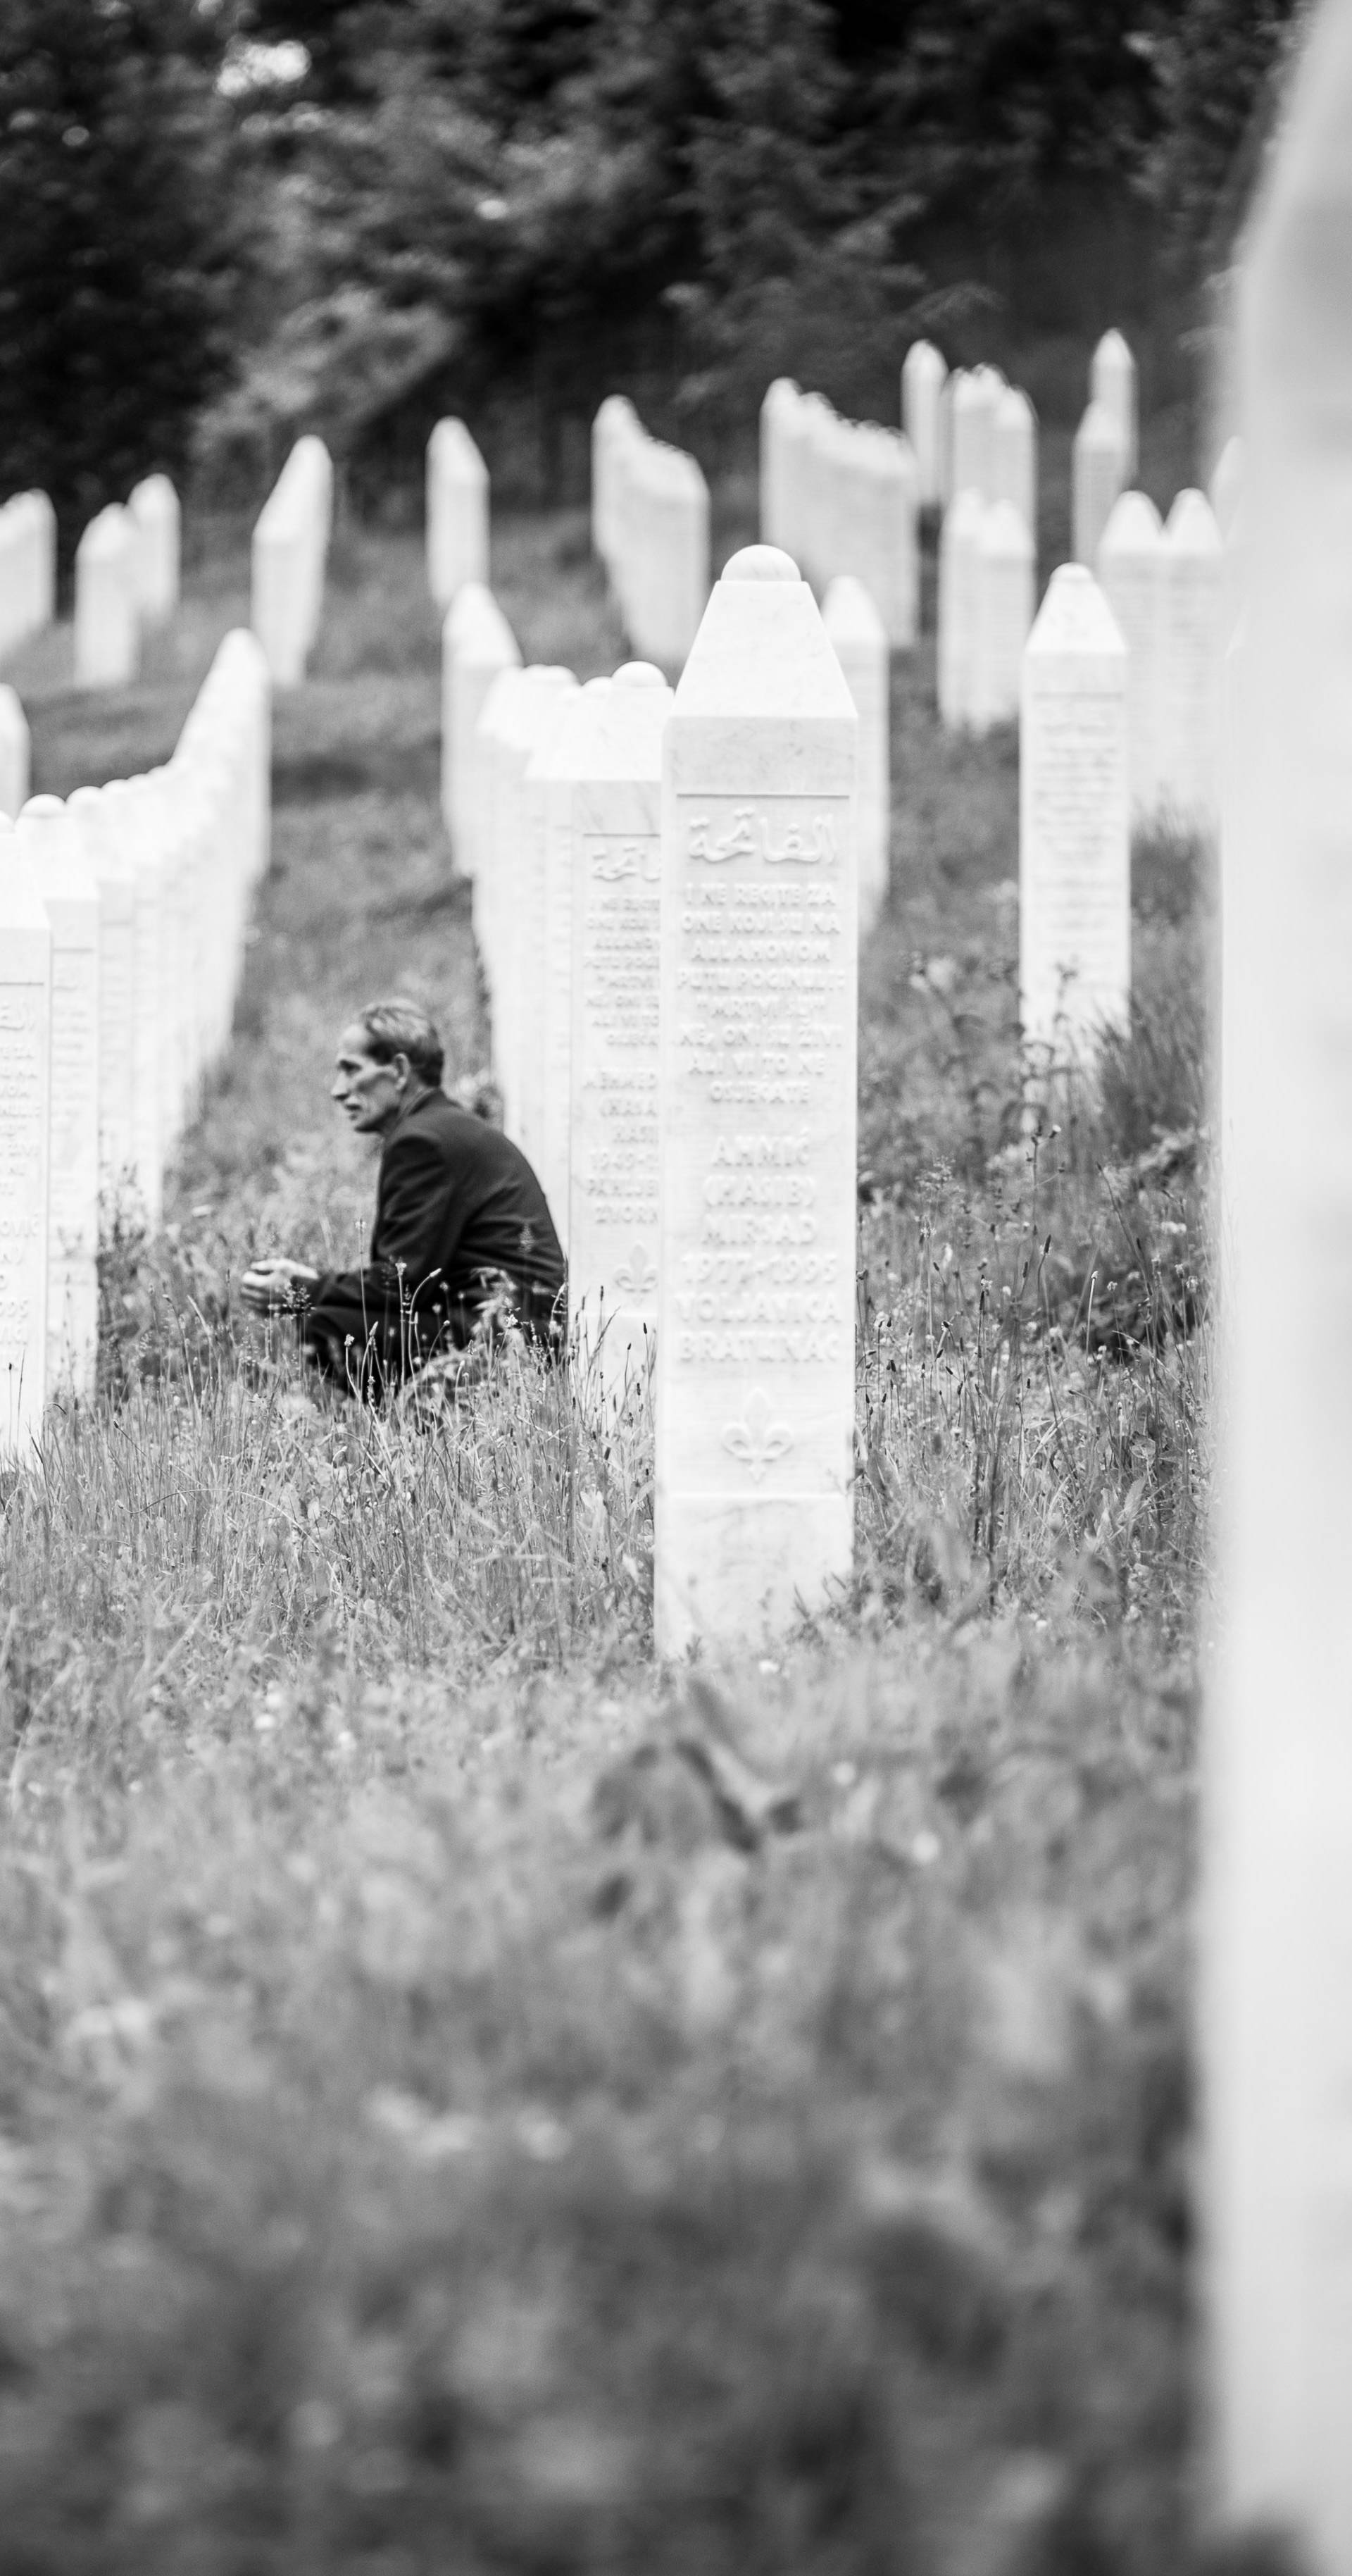 BIH, Massaker von Srebrenica, Potocari